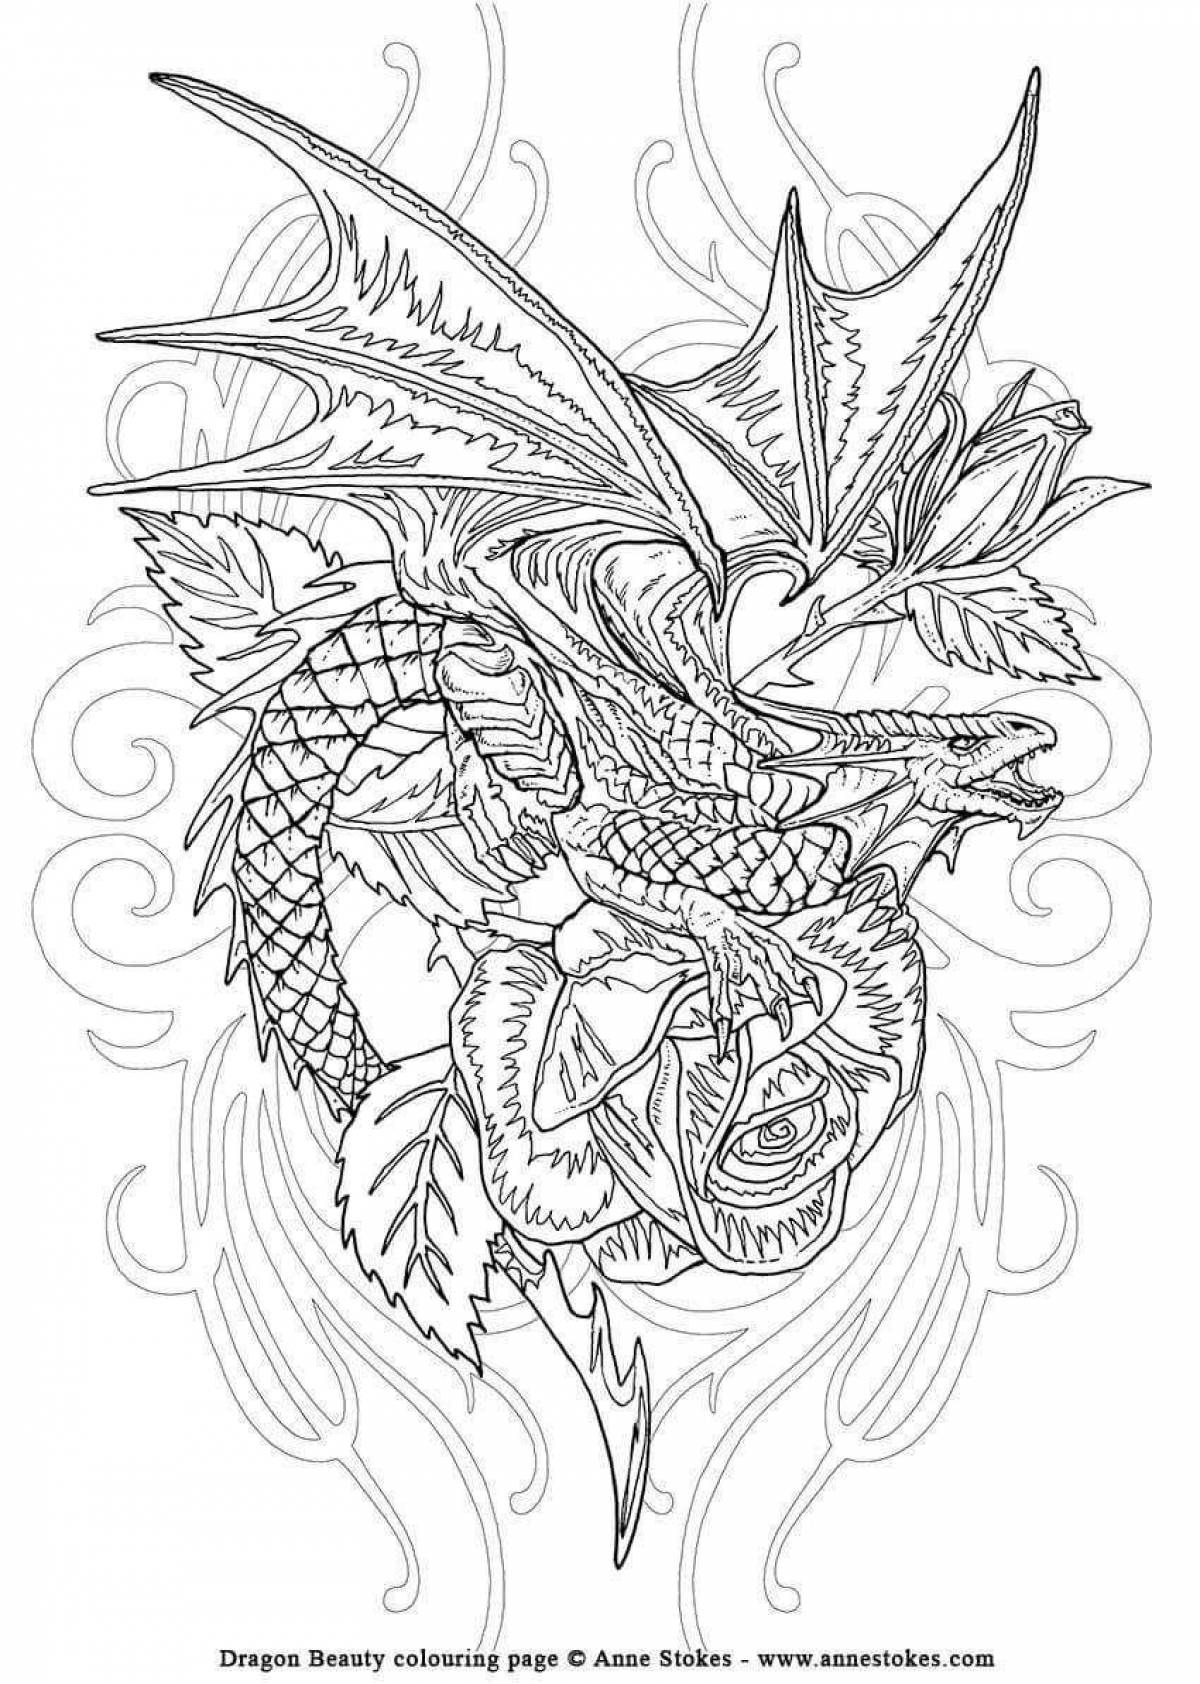 Impressive anti-stress dragon coloring book